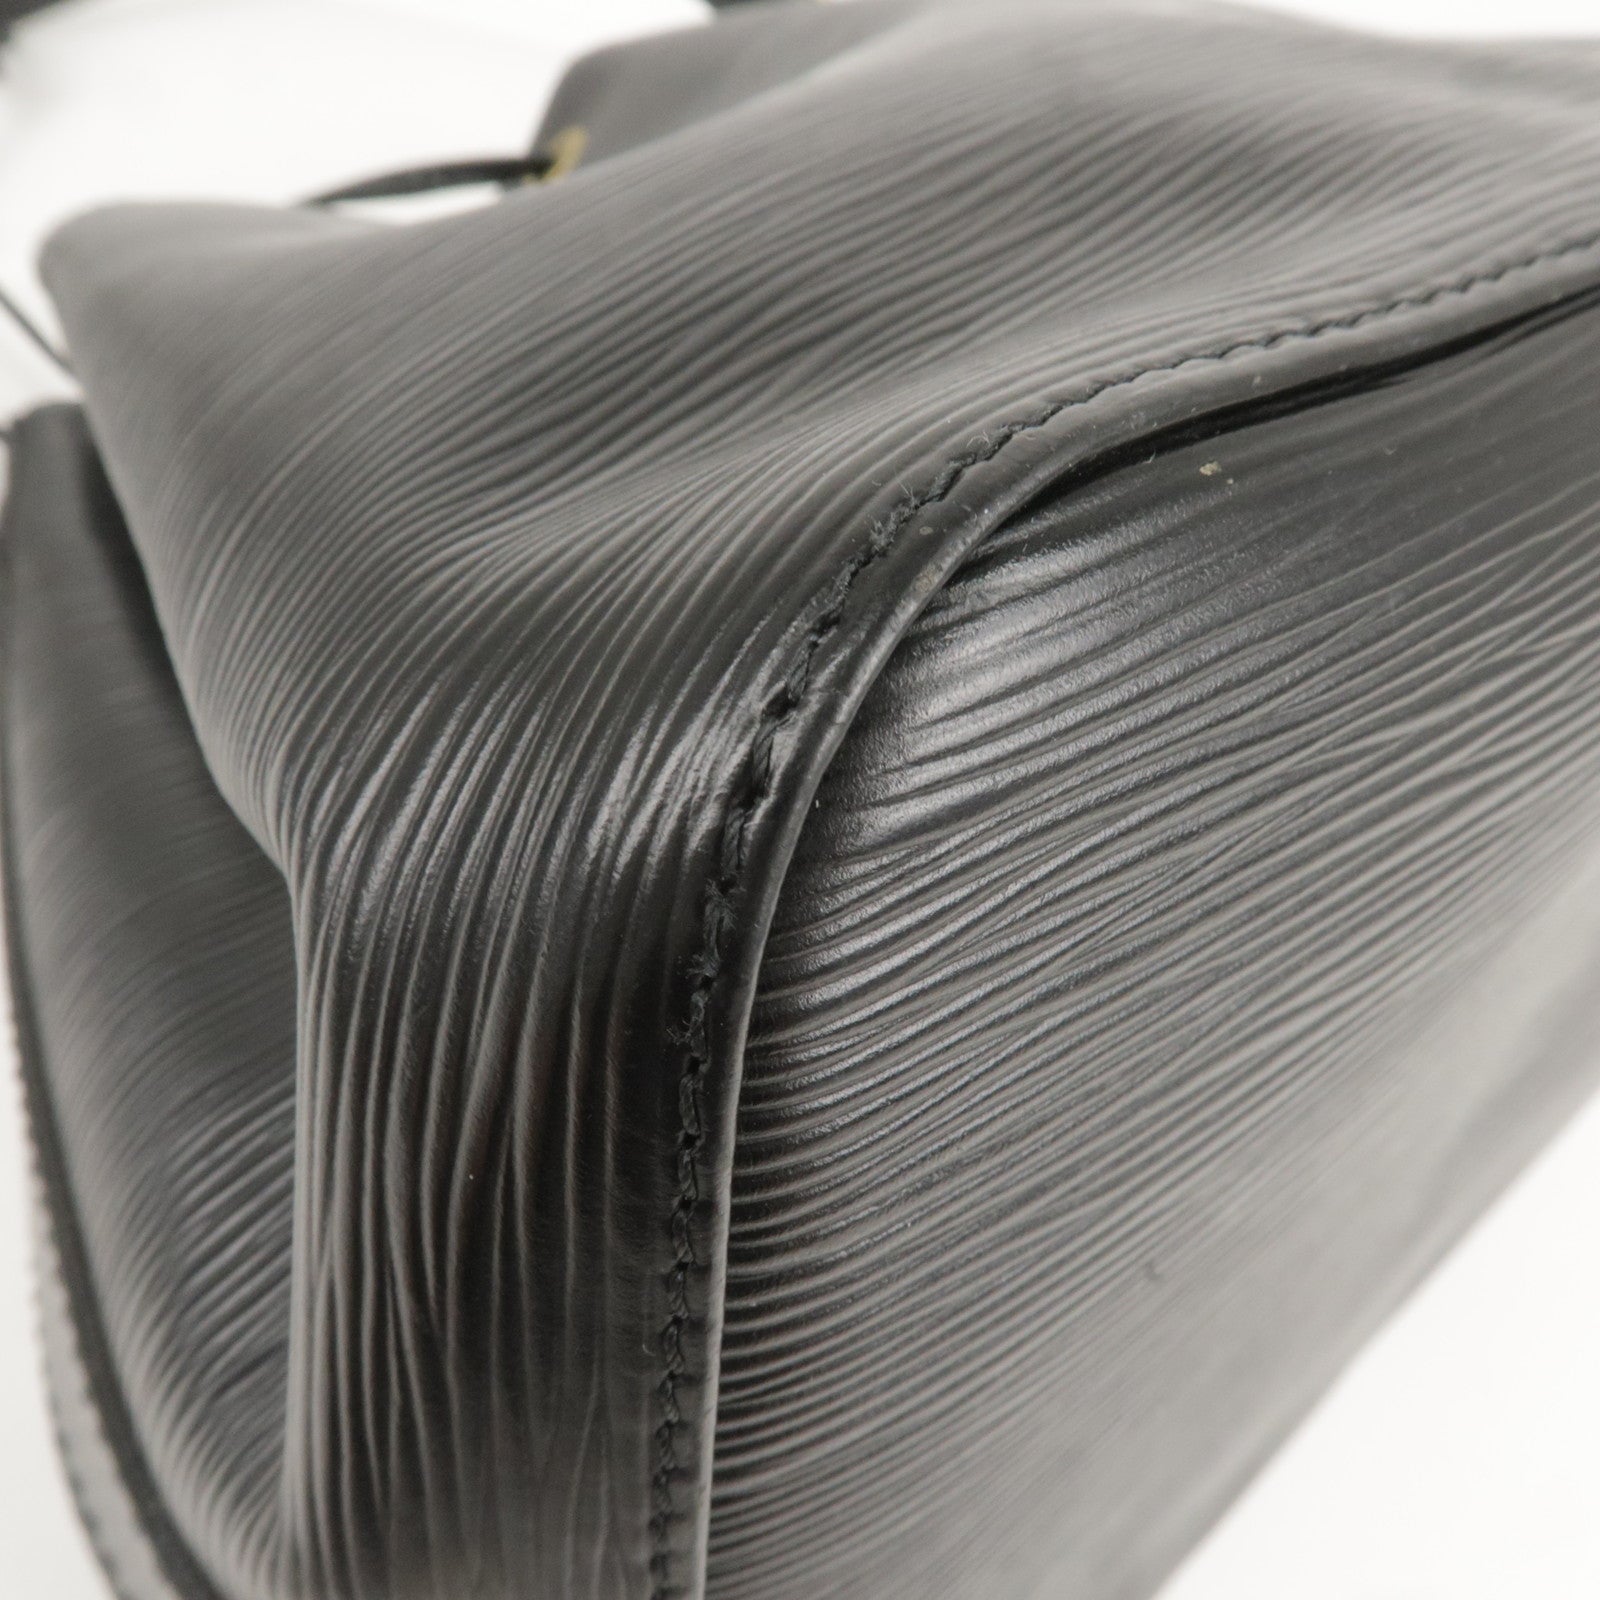 LOUIS VUITTON Shoulder Bag M59012 Petit Noe Epi Leather Black